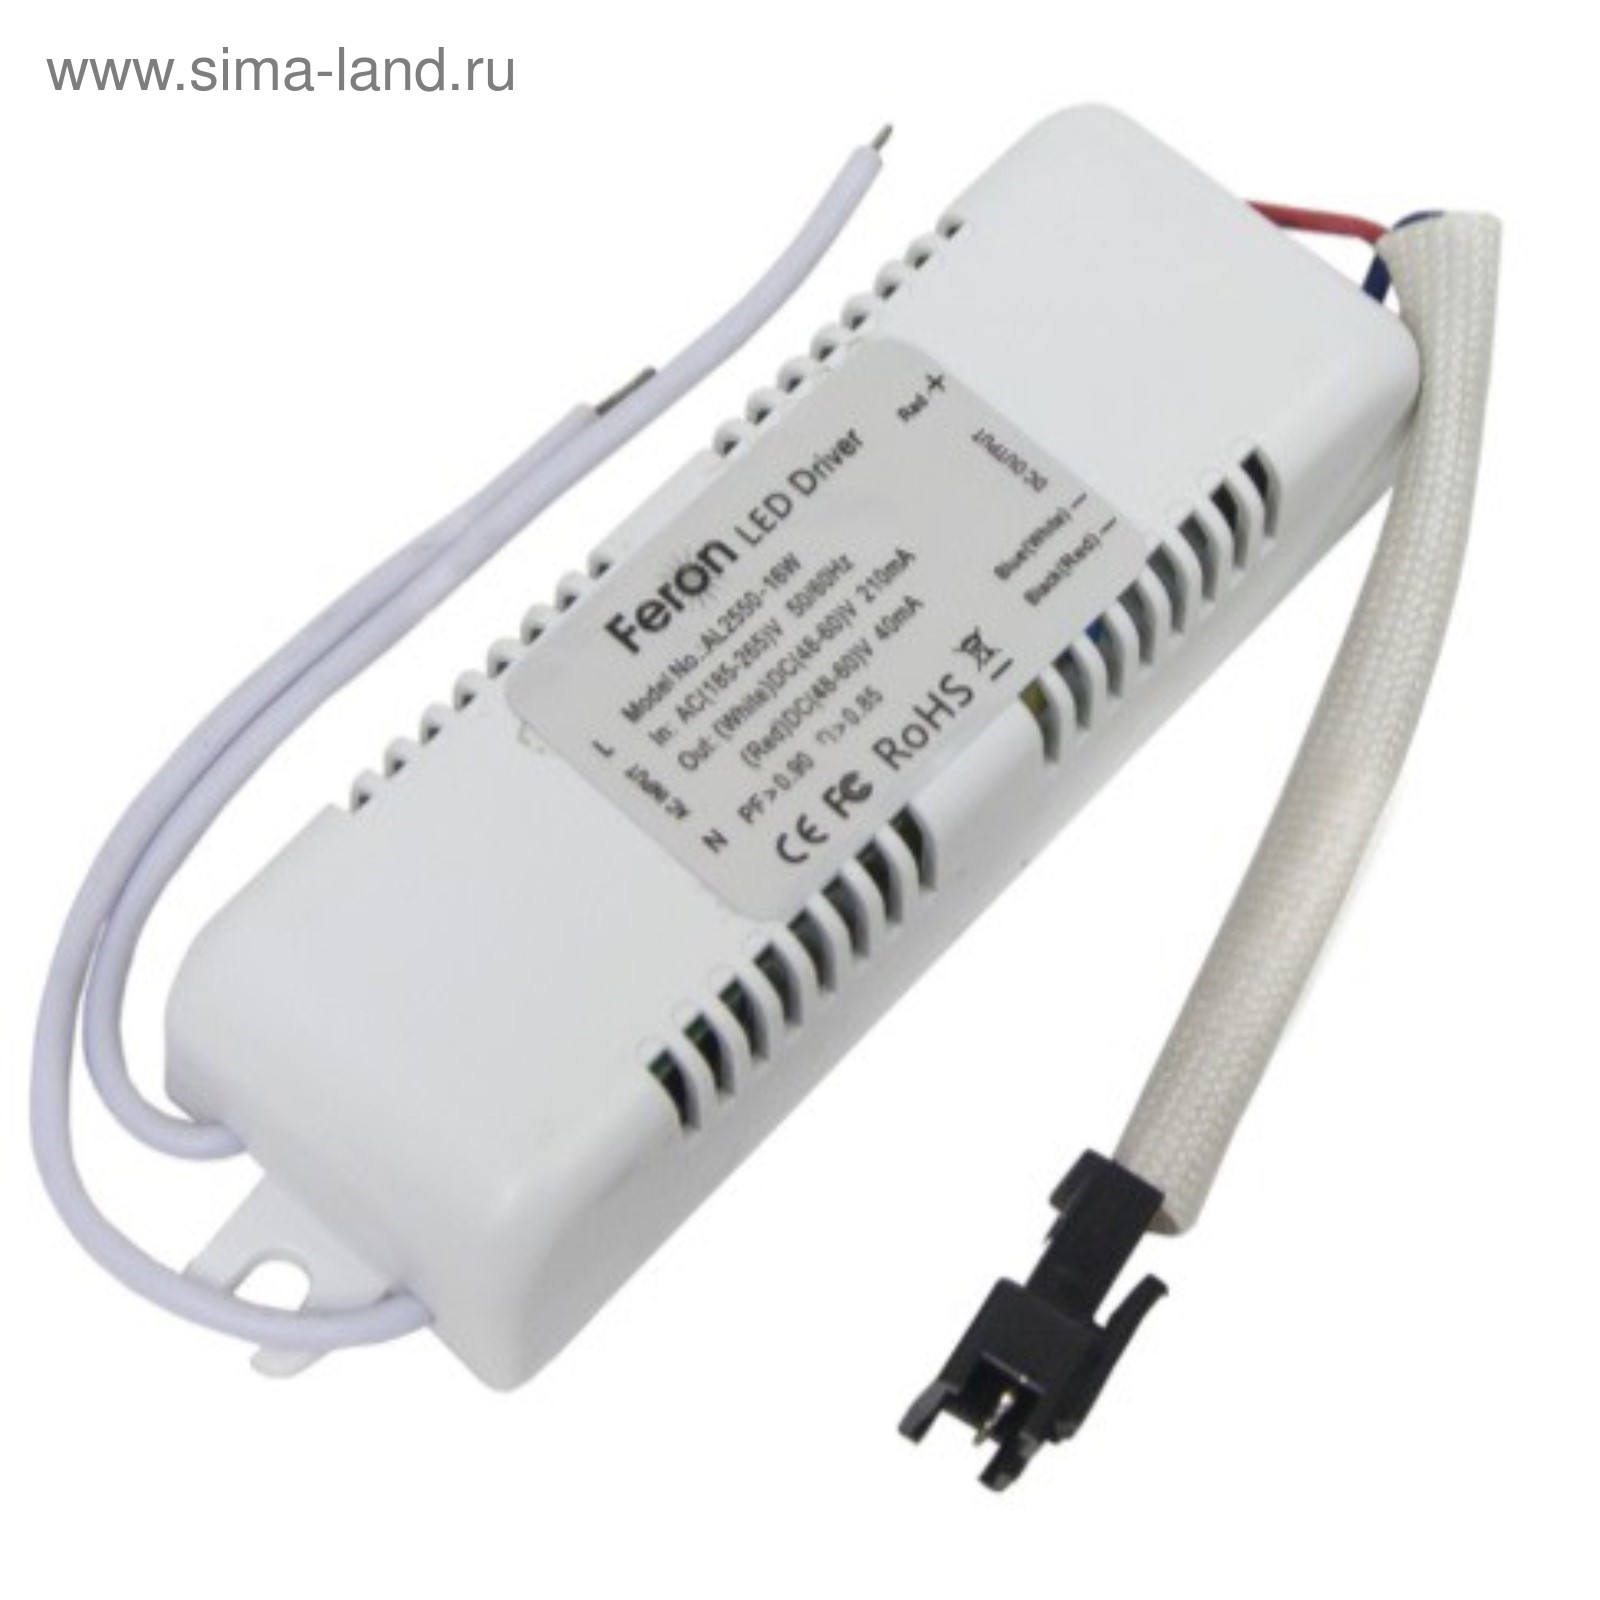 Драйвер для светодиодных светильников, LB153, AL2660 8W AC185-265V DC 24-30V 280mA